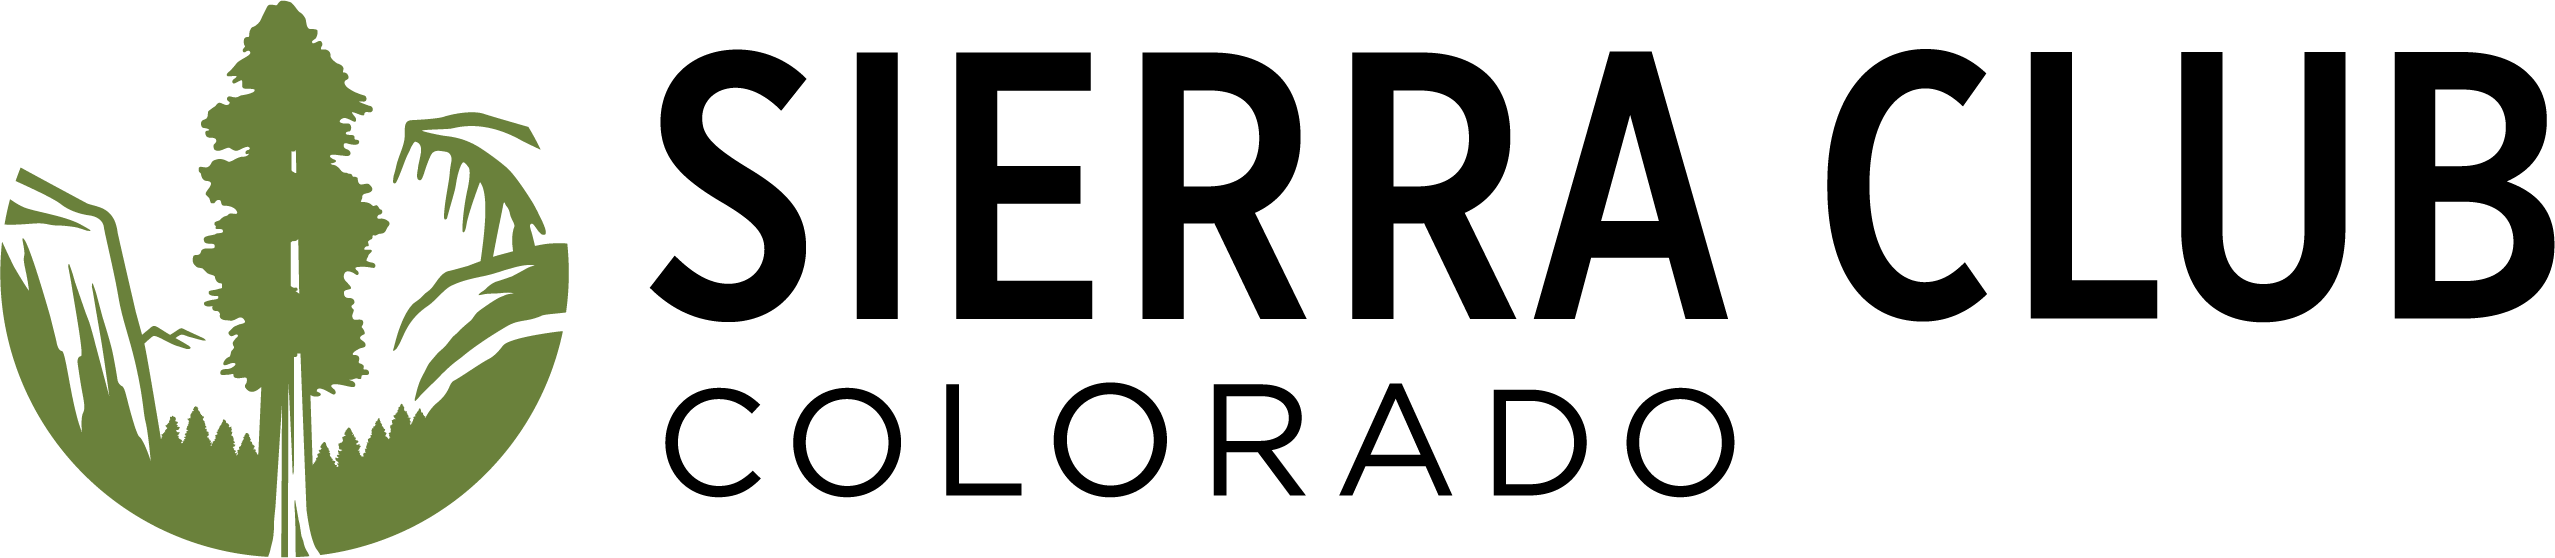 Colorado Sierra Club chapter logo